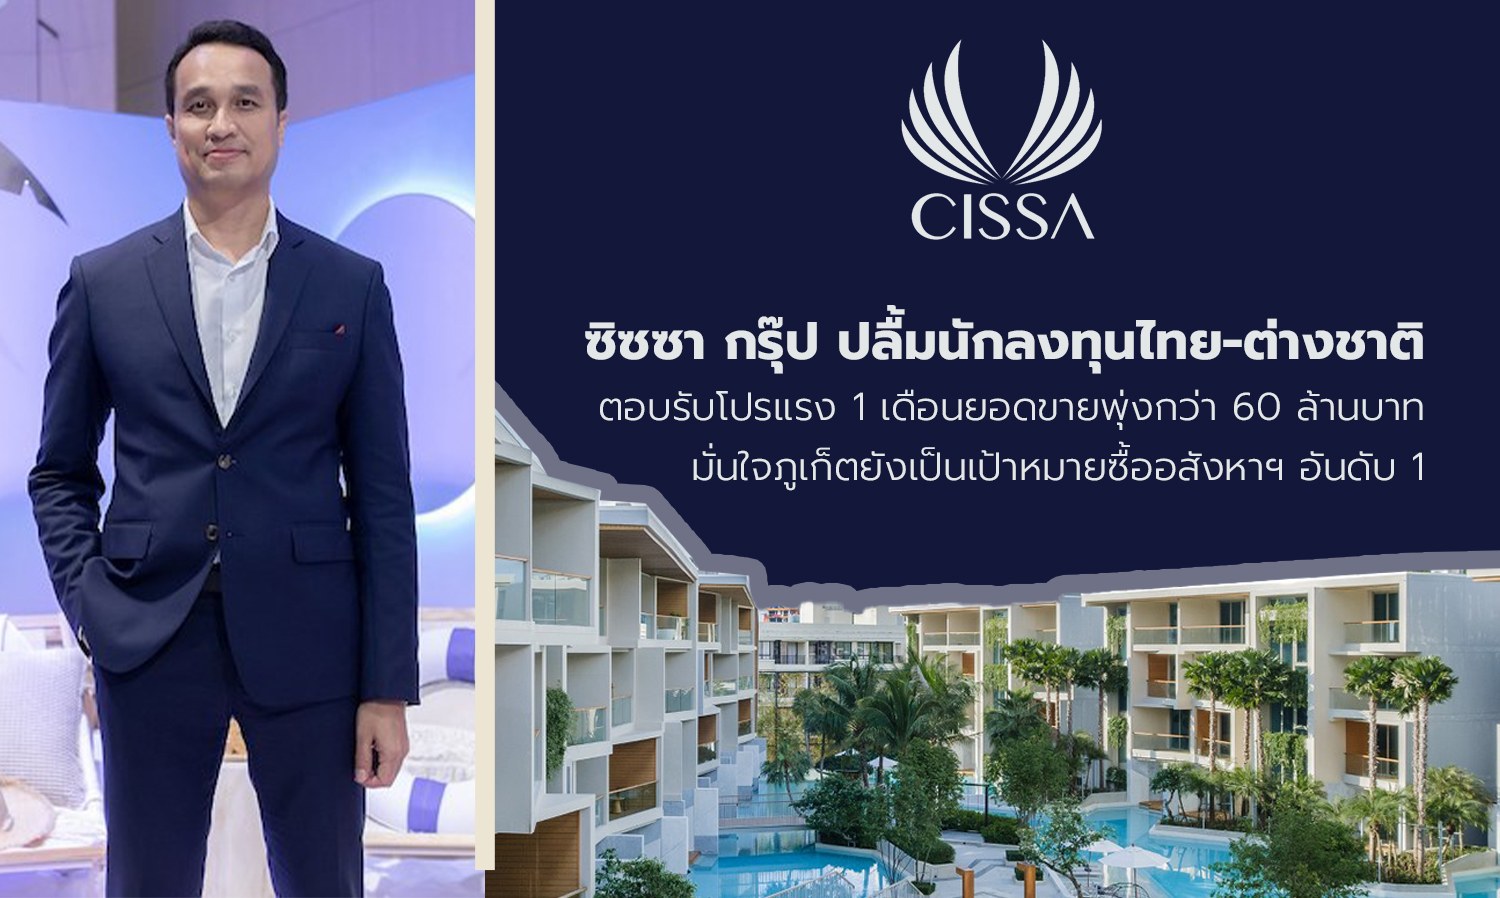 ซิซซา กรุ๊ป ปลื้มนักลงทุนไทย-ต่างชาติ ตอบรับโปรแรง 1 เดือนยอดขายพุ่งกว่า 60 ล้านบาท มั่นใจภูเก็ตยังเป็นเป้าหมายซื้ออสังหาฯอันดับ1